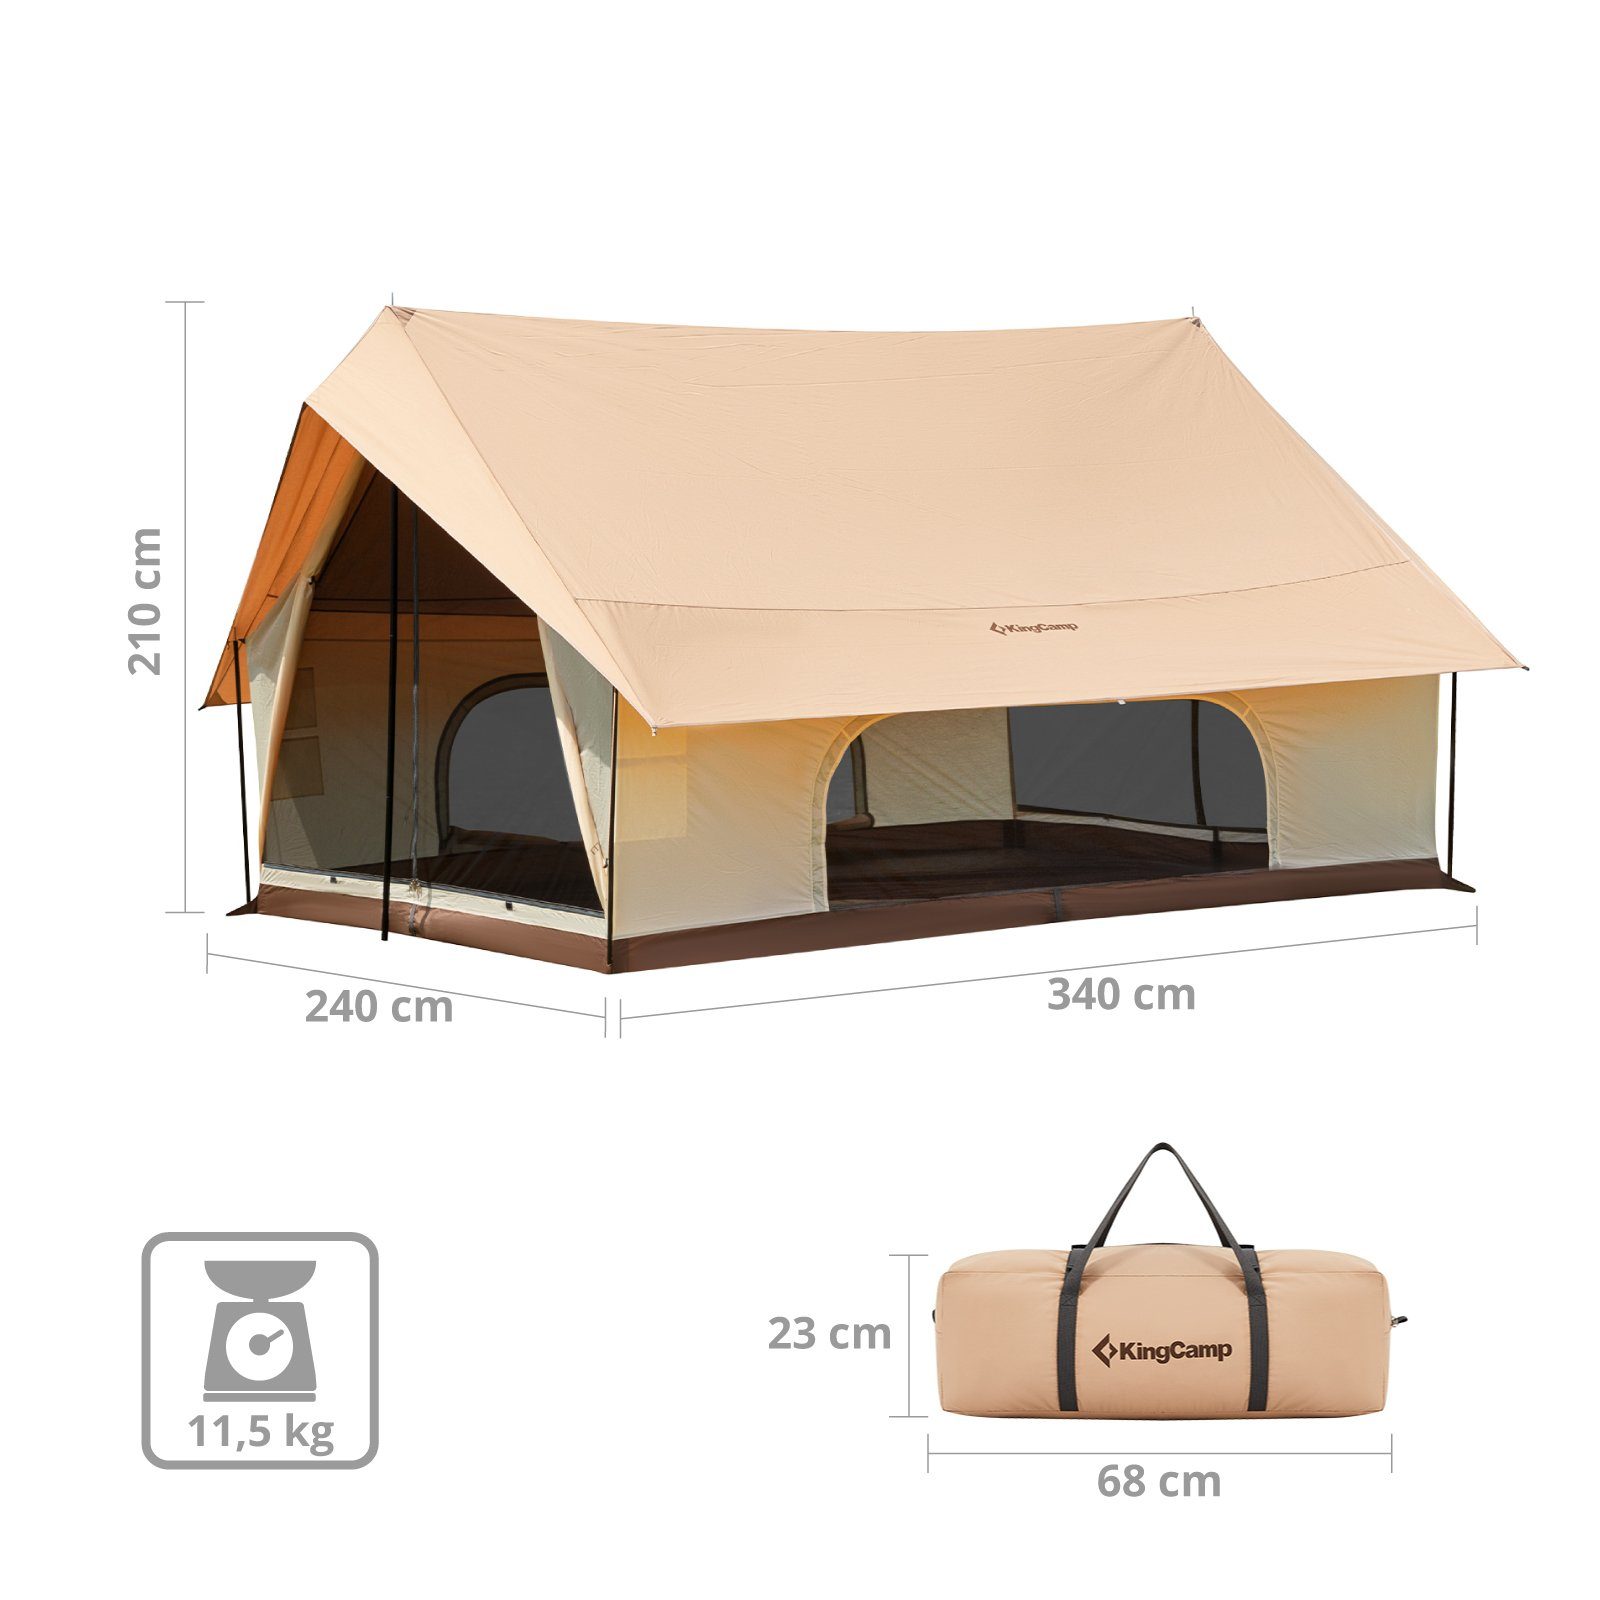 Baumwolle Firstzelt Familien Personen, Zelt Pinehouse Hauszelt 3-4 Campingzelt KingCamp